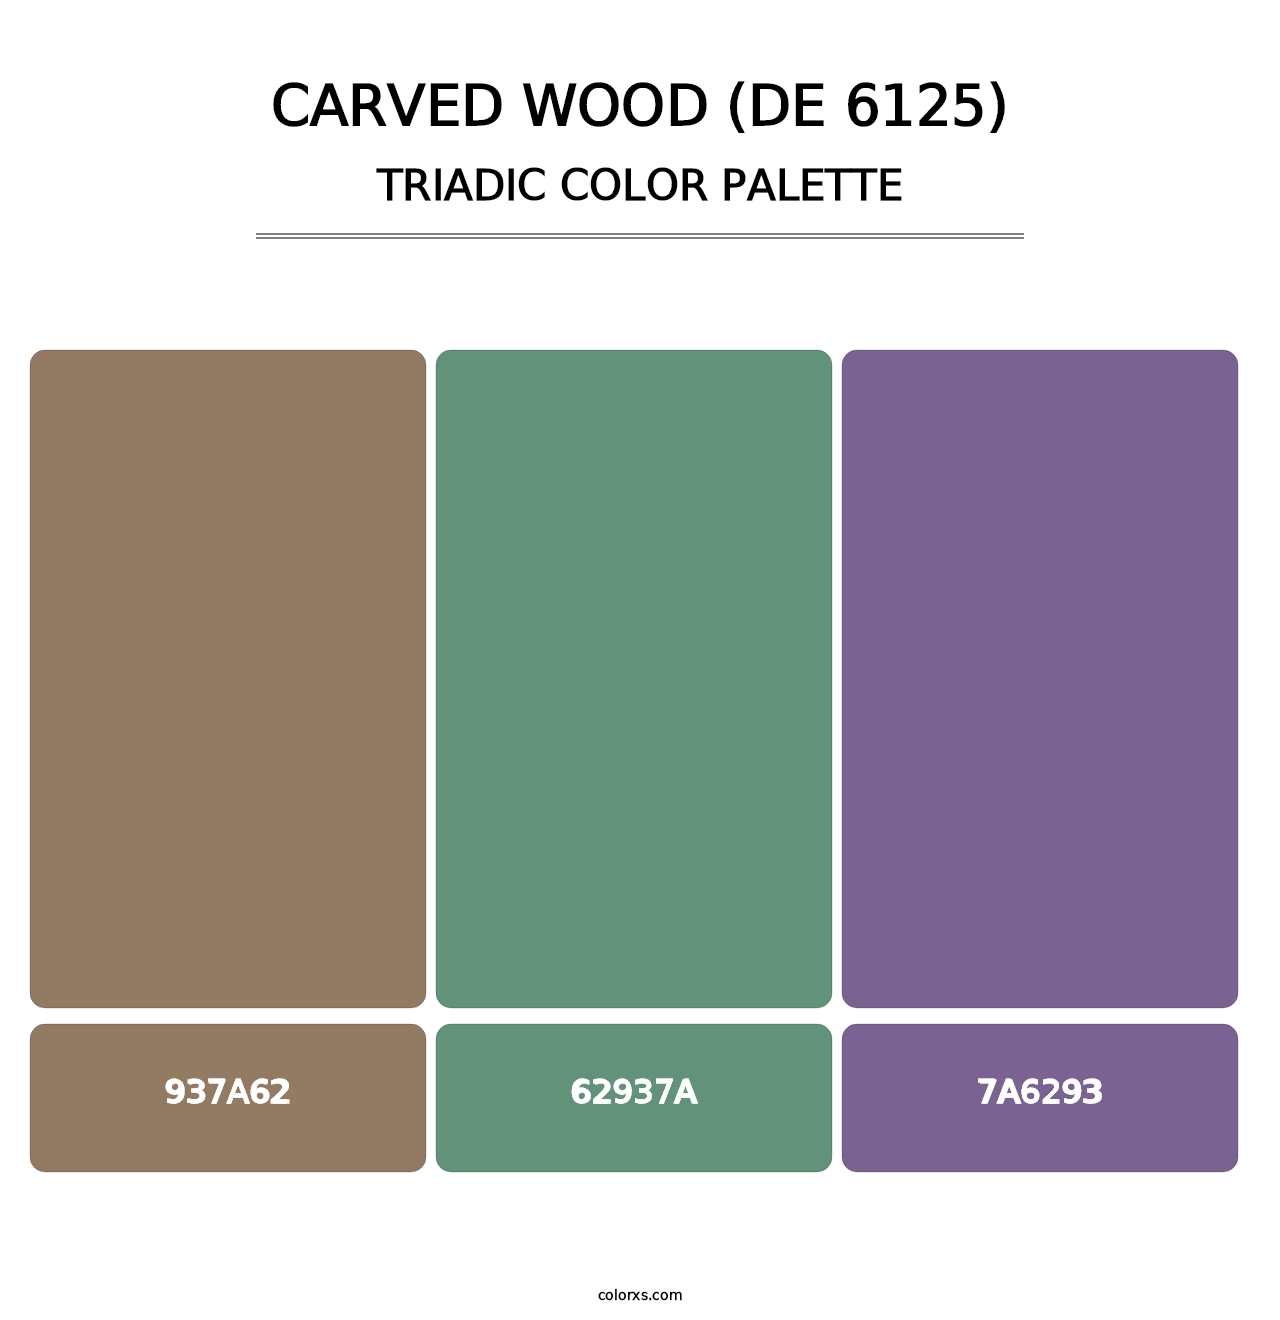 Carved Wood (DE 6125) - Triadic Color Palette